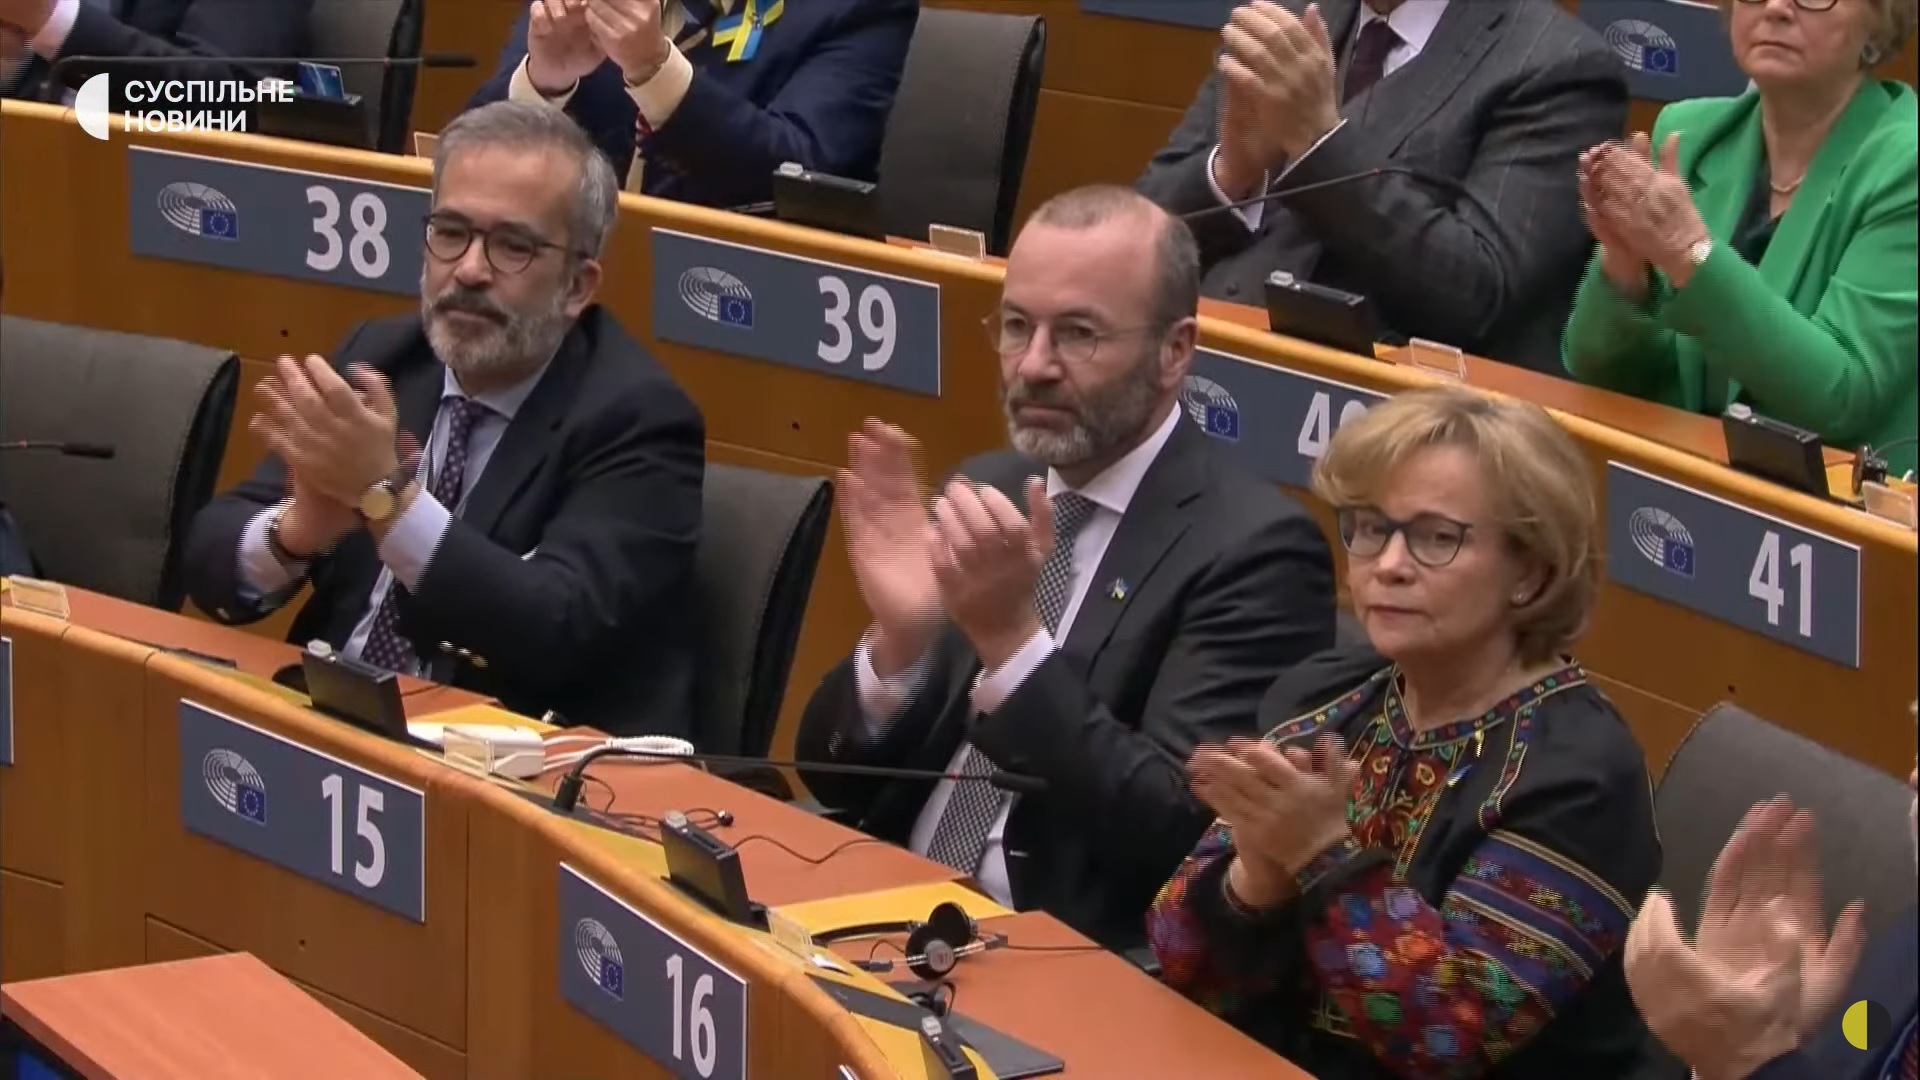 Les députés écoutent attentivement le discours de Zelensky au Parlement européen.  Parmi eux se trouve Rasa Yuknyavichene en ukrainien Vyshyvanka